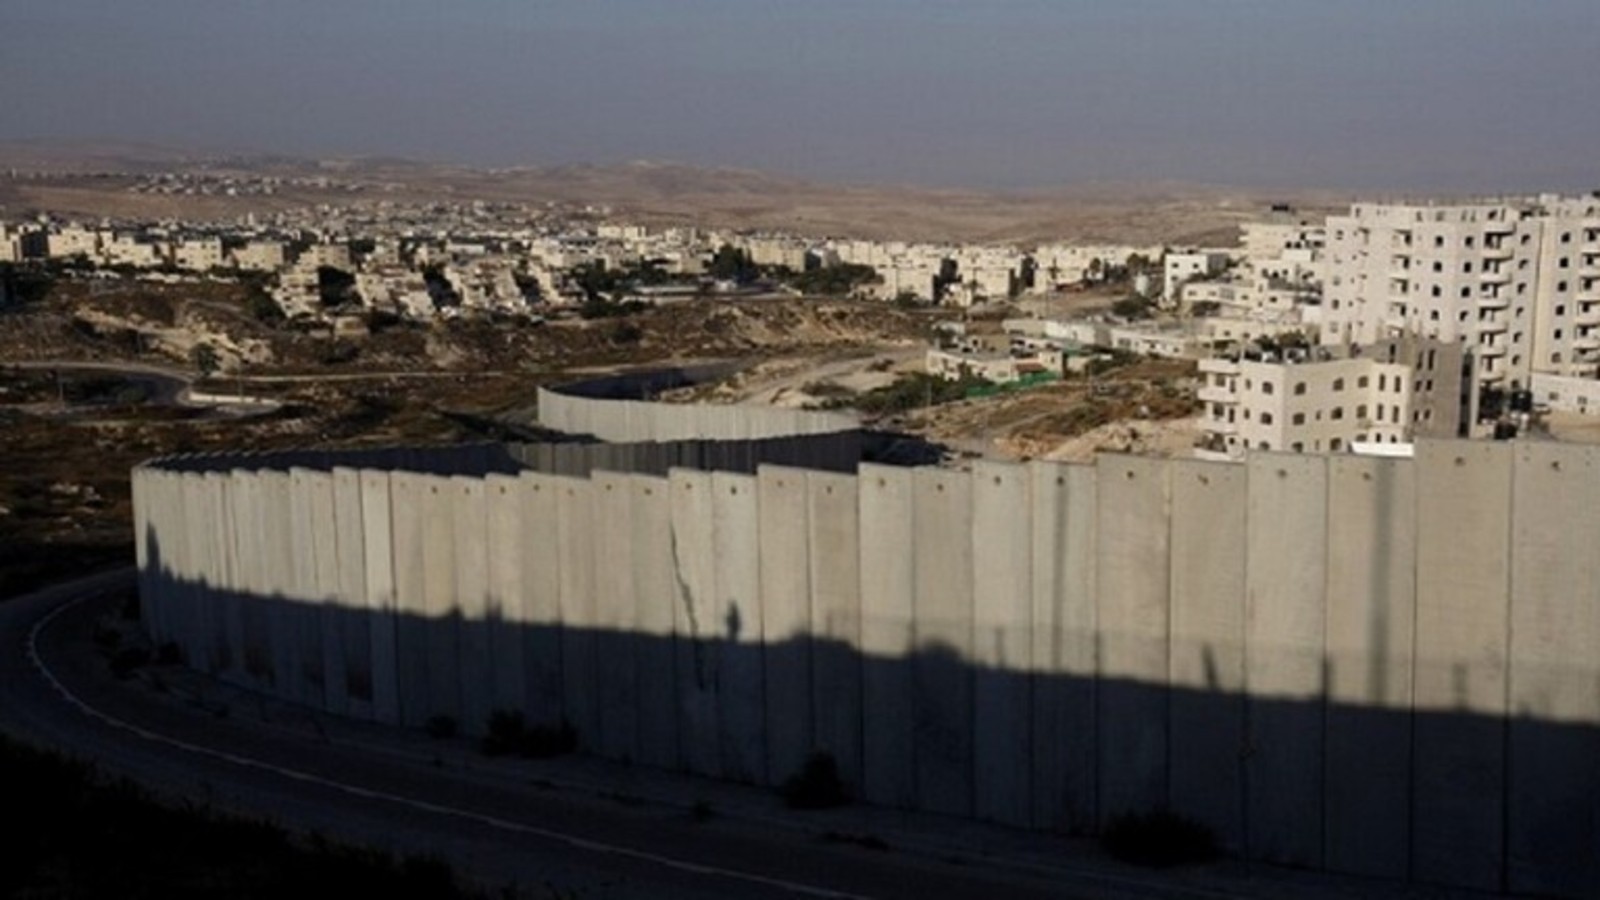 بطول 4.5 كلم.. الكيان الصهيوني يبدأ في إنشاء جدار أسمنتي يفصل إسرائيل عن قطاع غزة